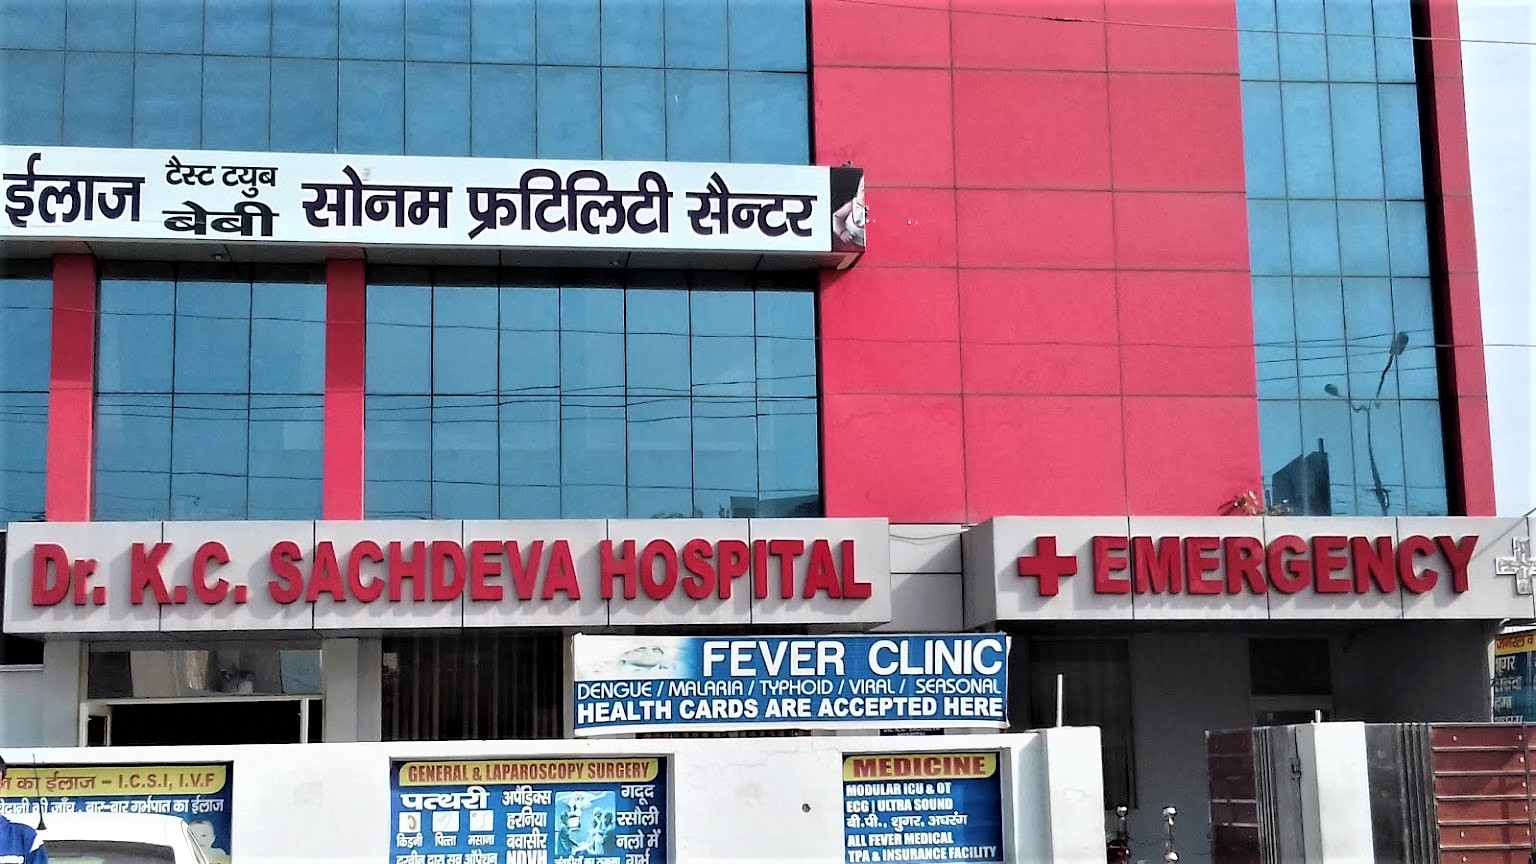 Dr. K. C. Sachdeva Hospital